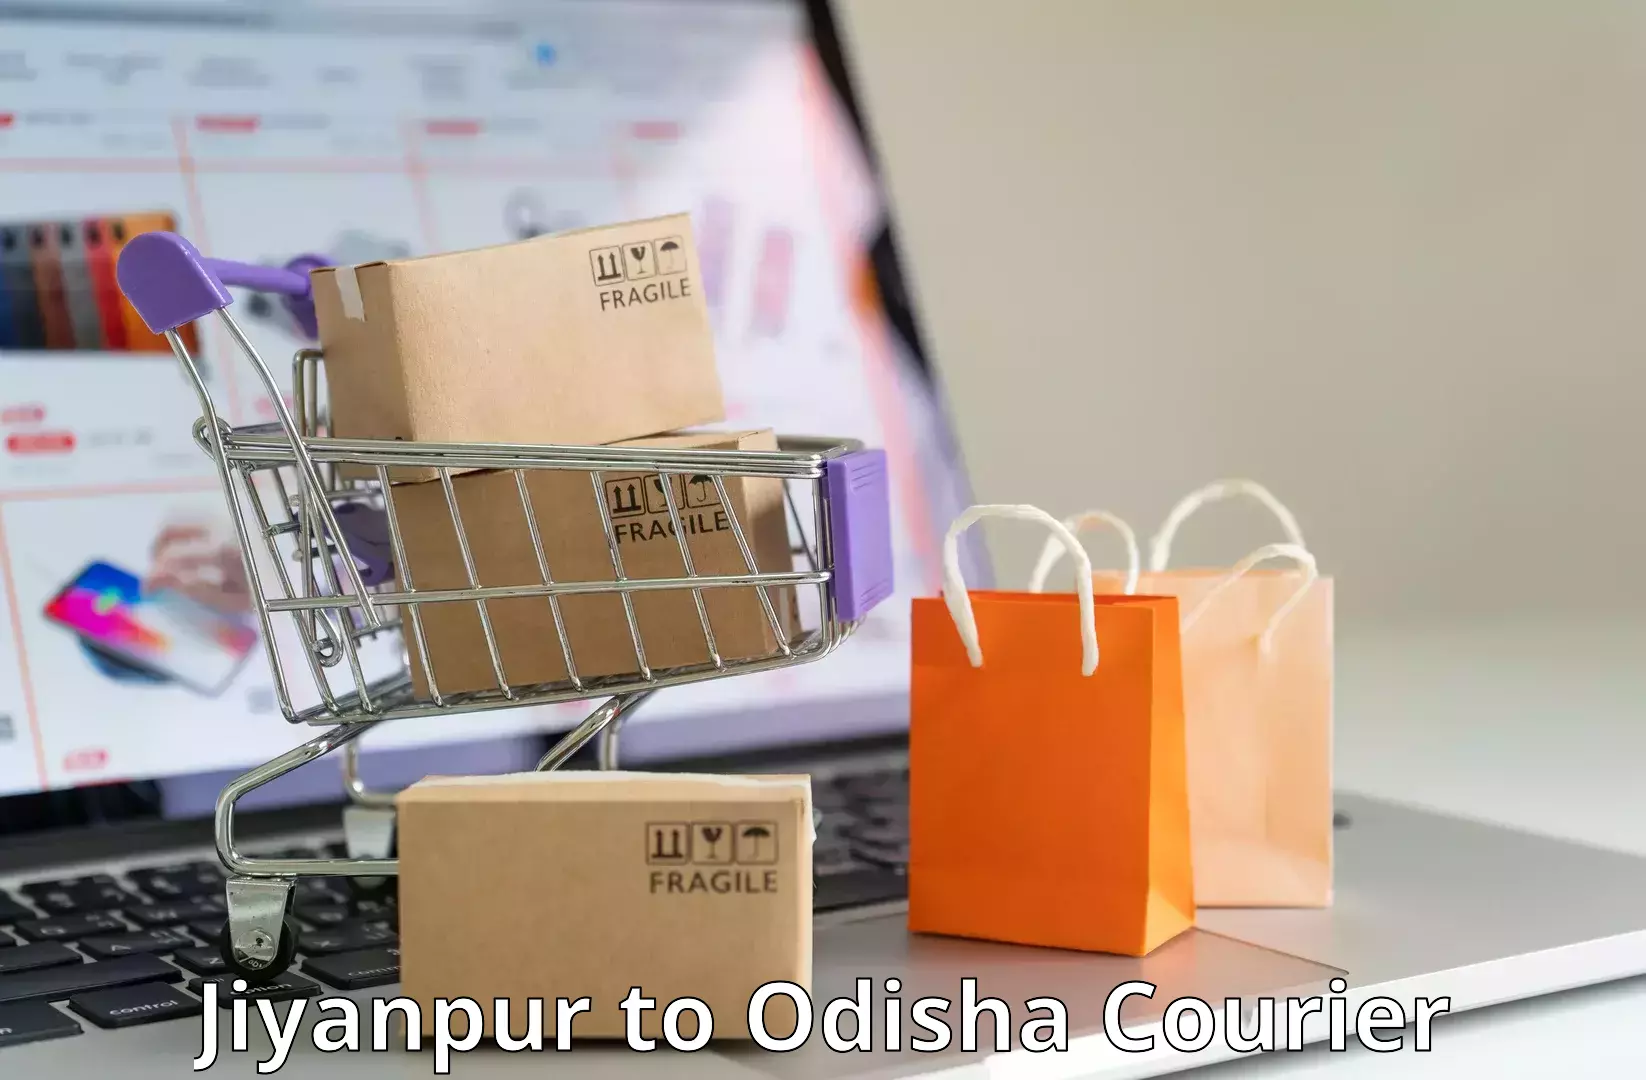 Supply chain efficiency Jiyanpur to Tikiri